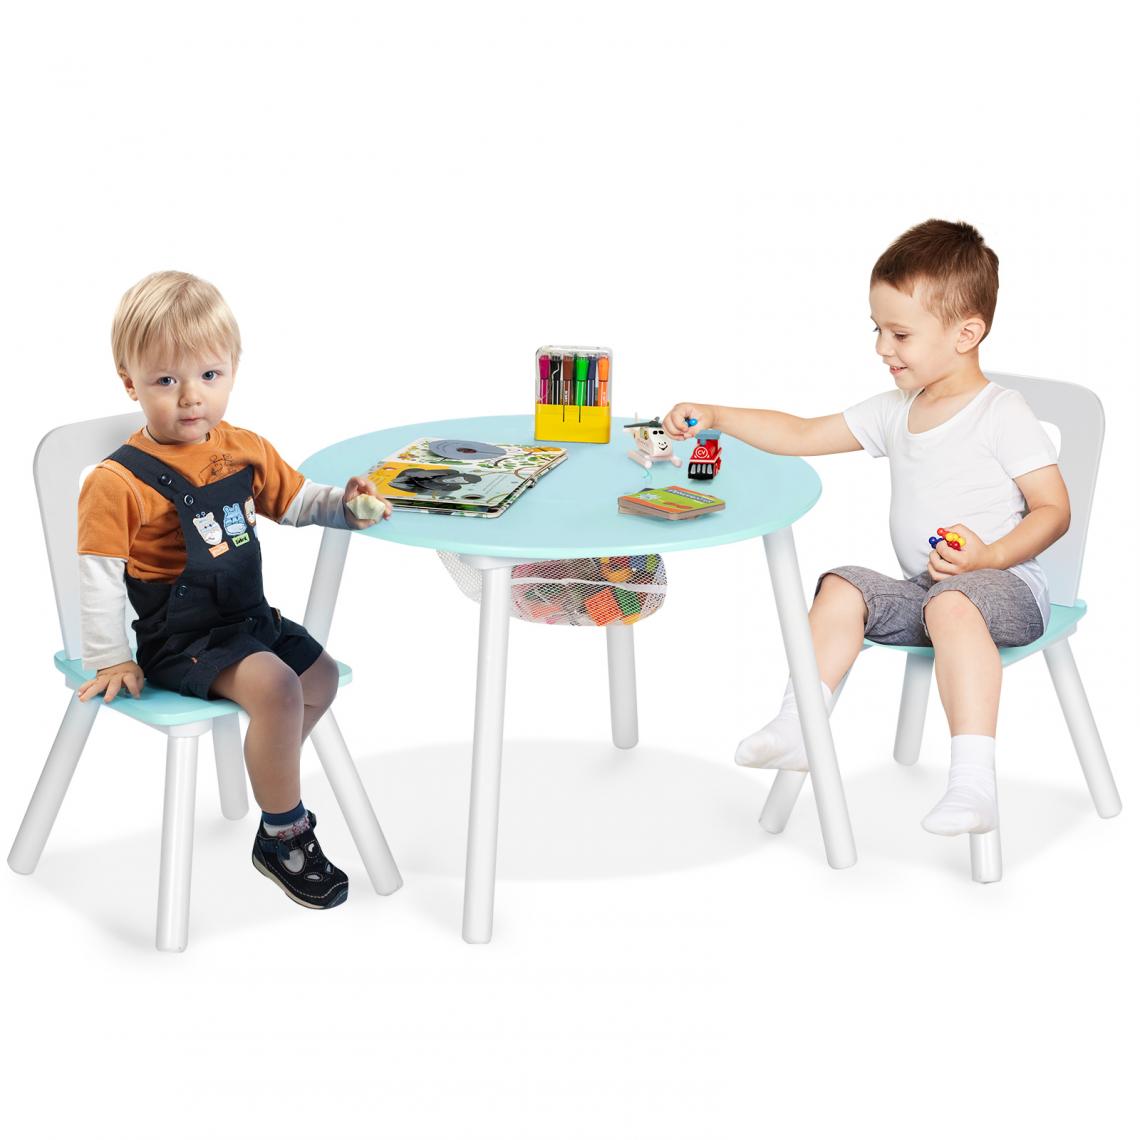 Costway - Table pour Enfants avec 2 Chaises,Table Ronde avec Espace de Rangement pour Jouets Vert - Tables à manger